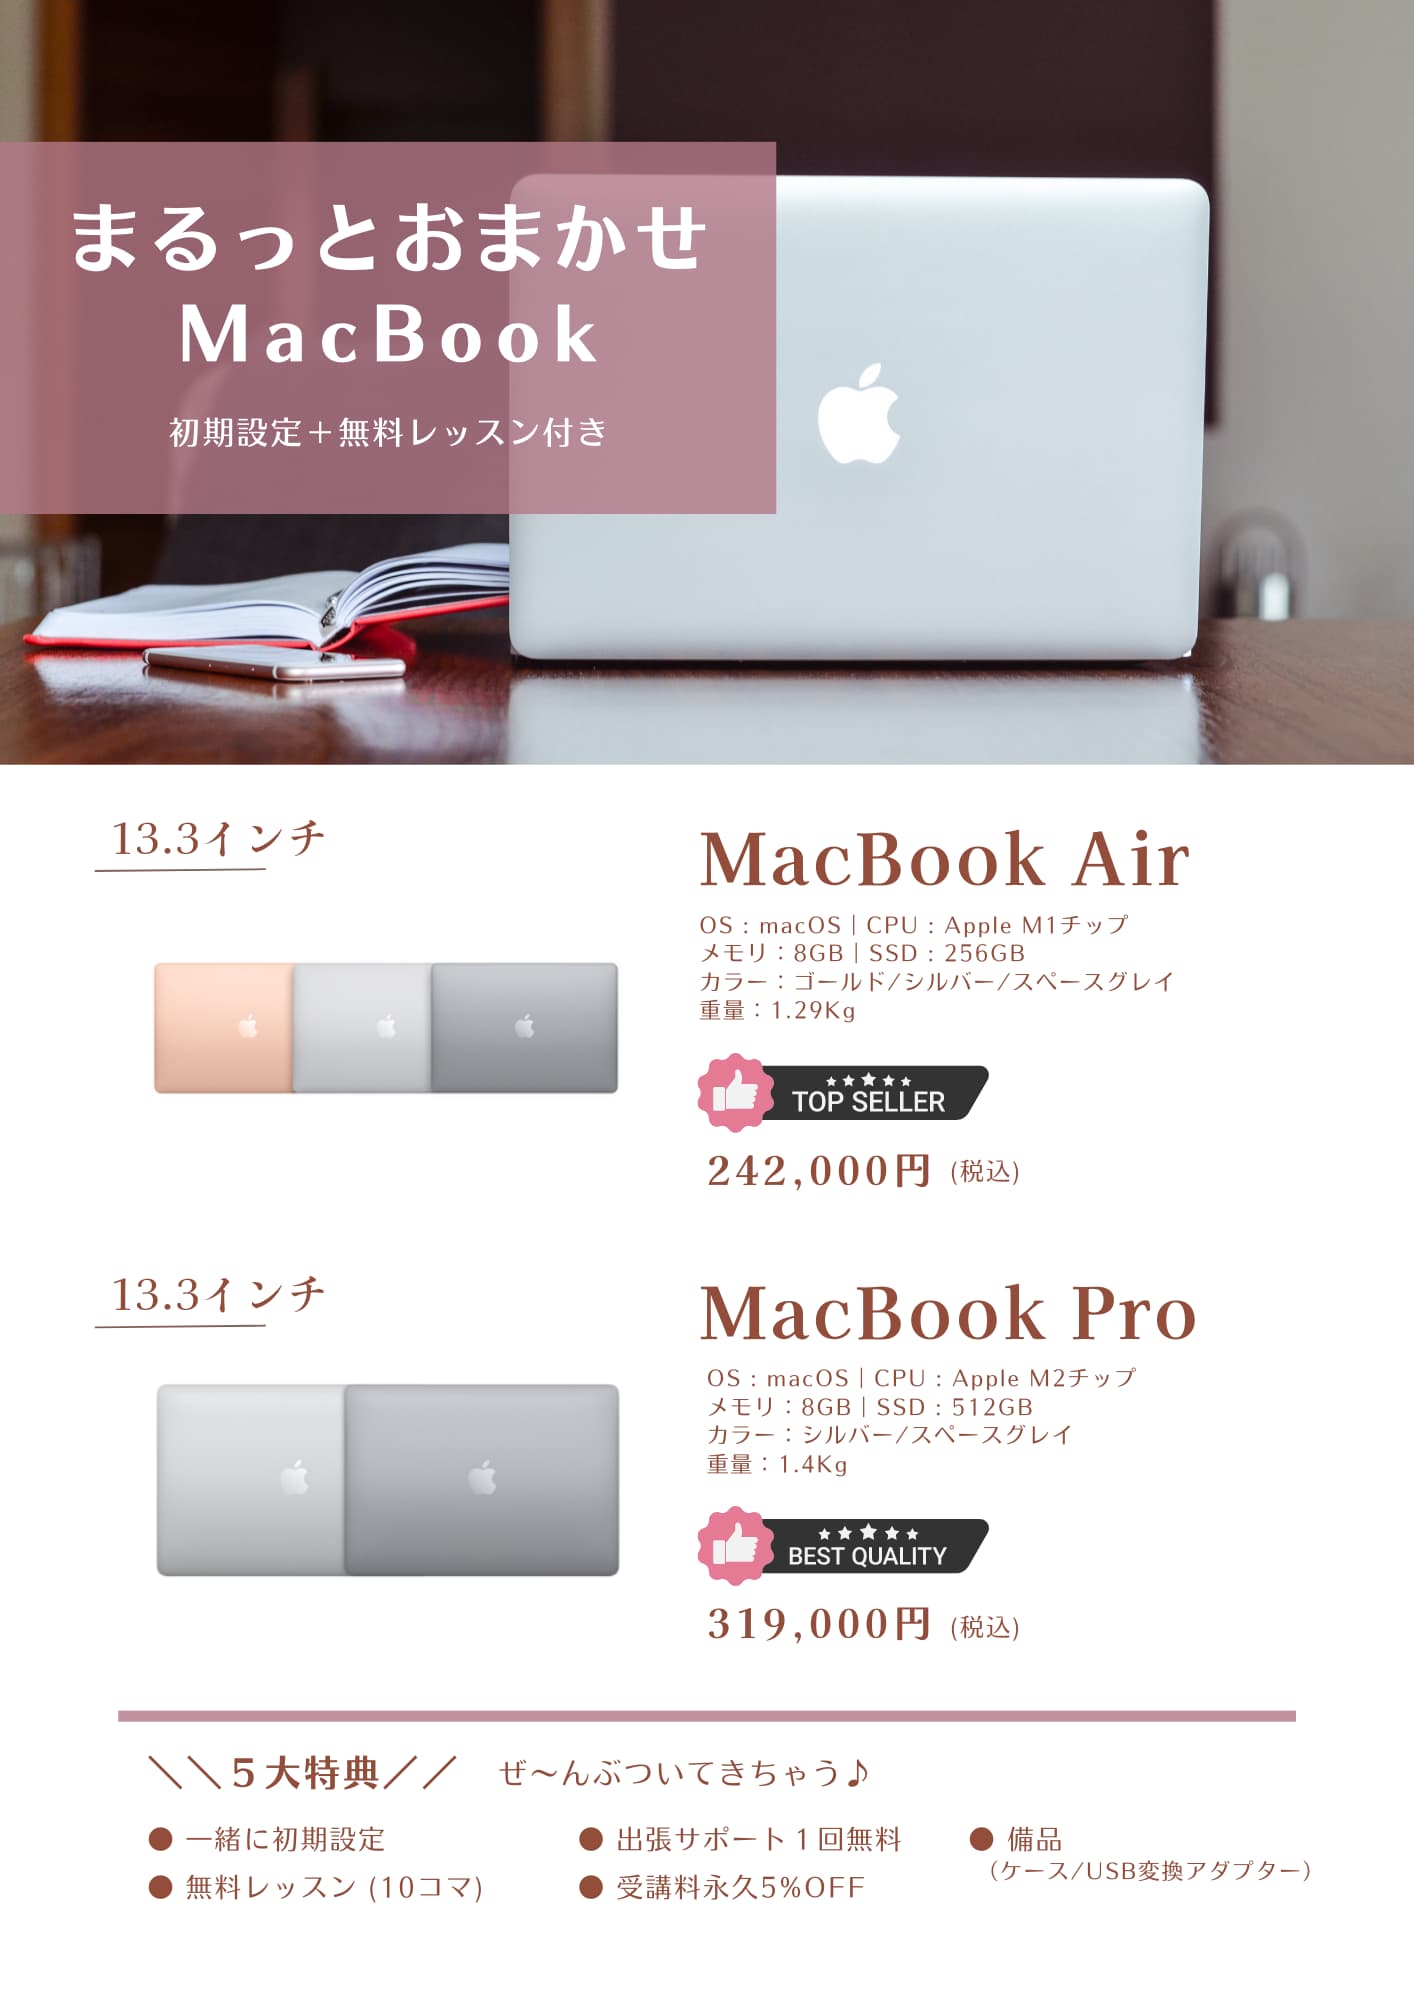 まるっとおまかせMacBook販売 アクアパソコン教室 福岡校